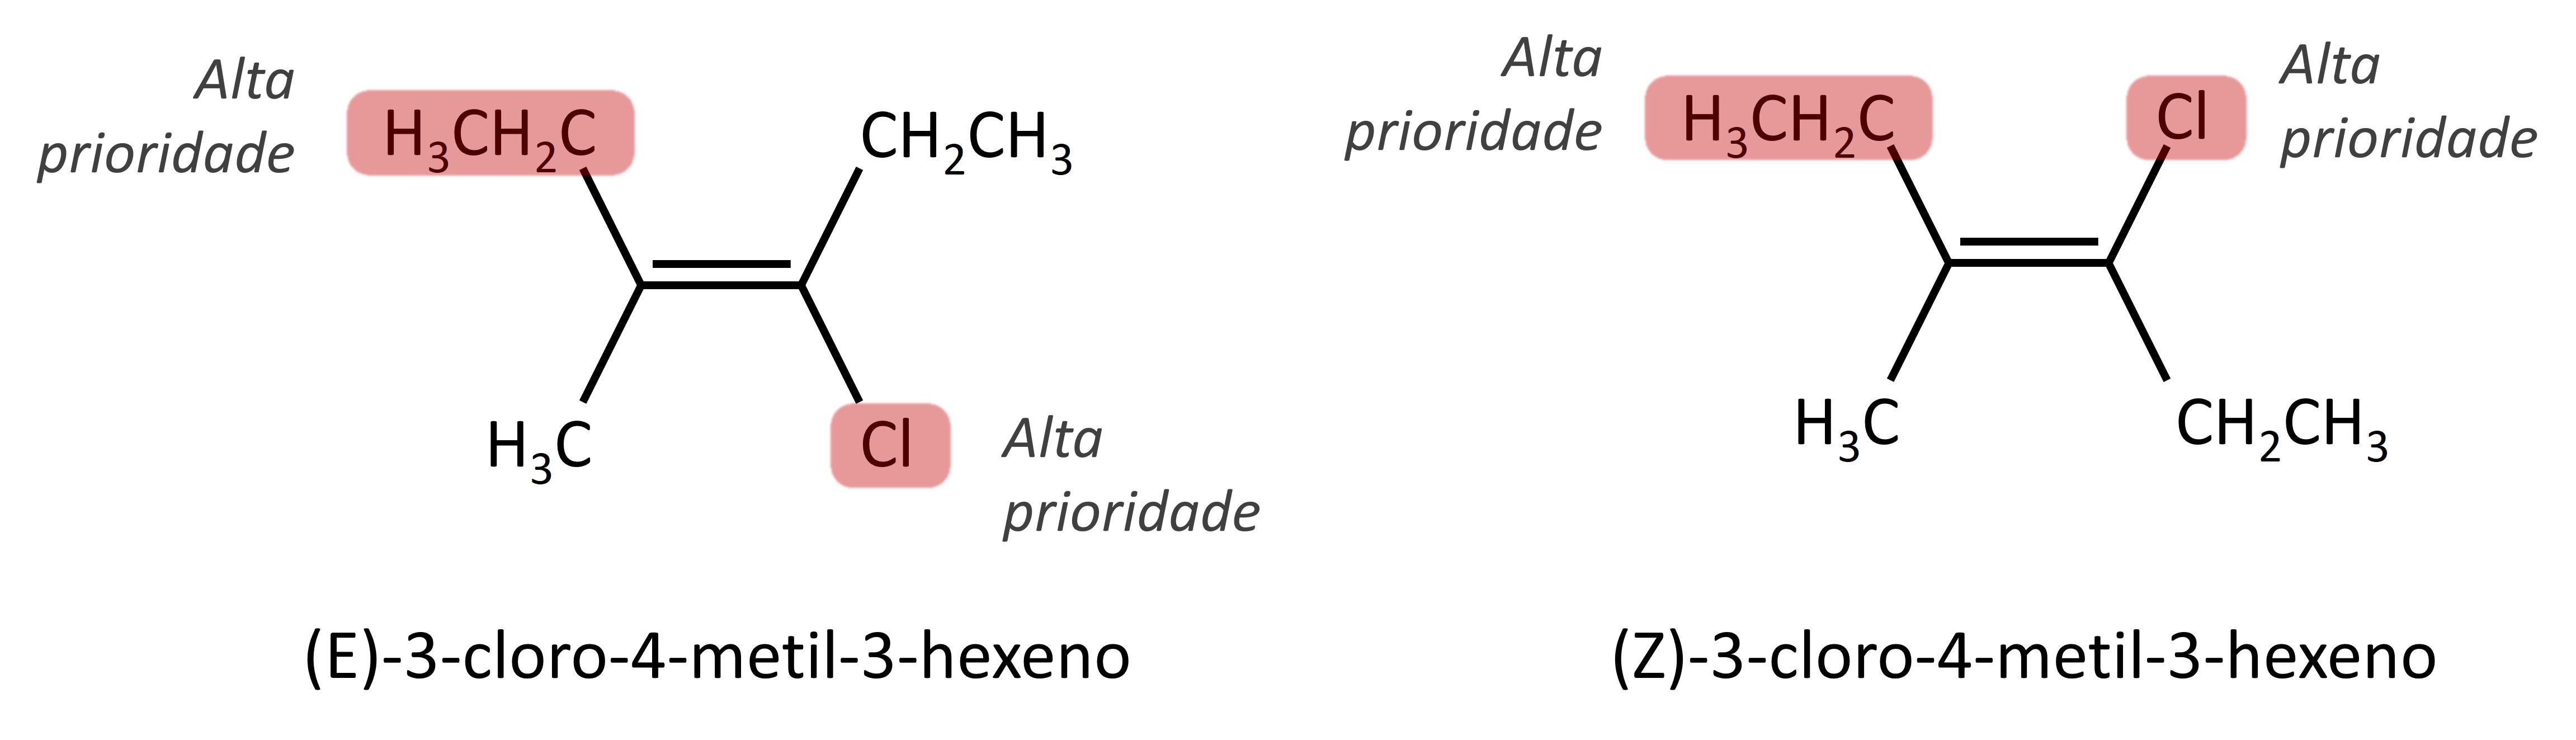 Exemplos de estrutura e nomenclatura de isômeros E-Z.